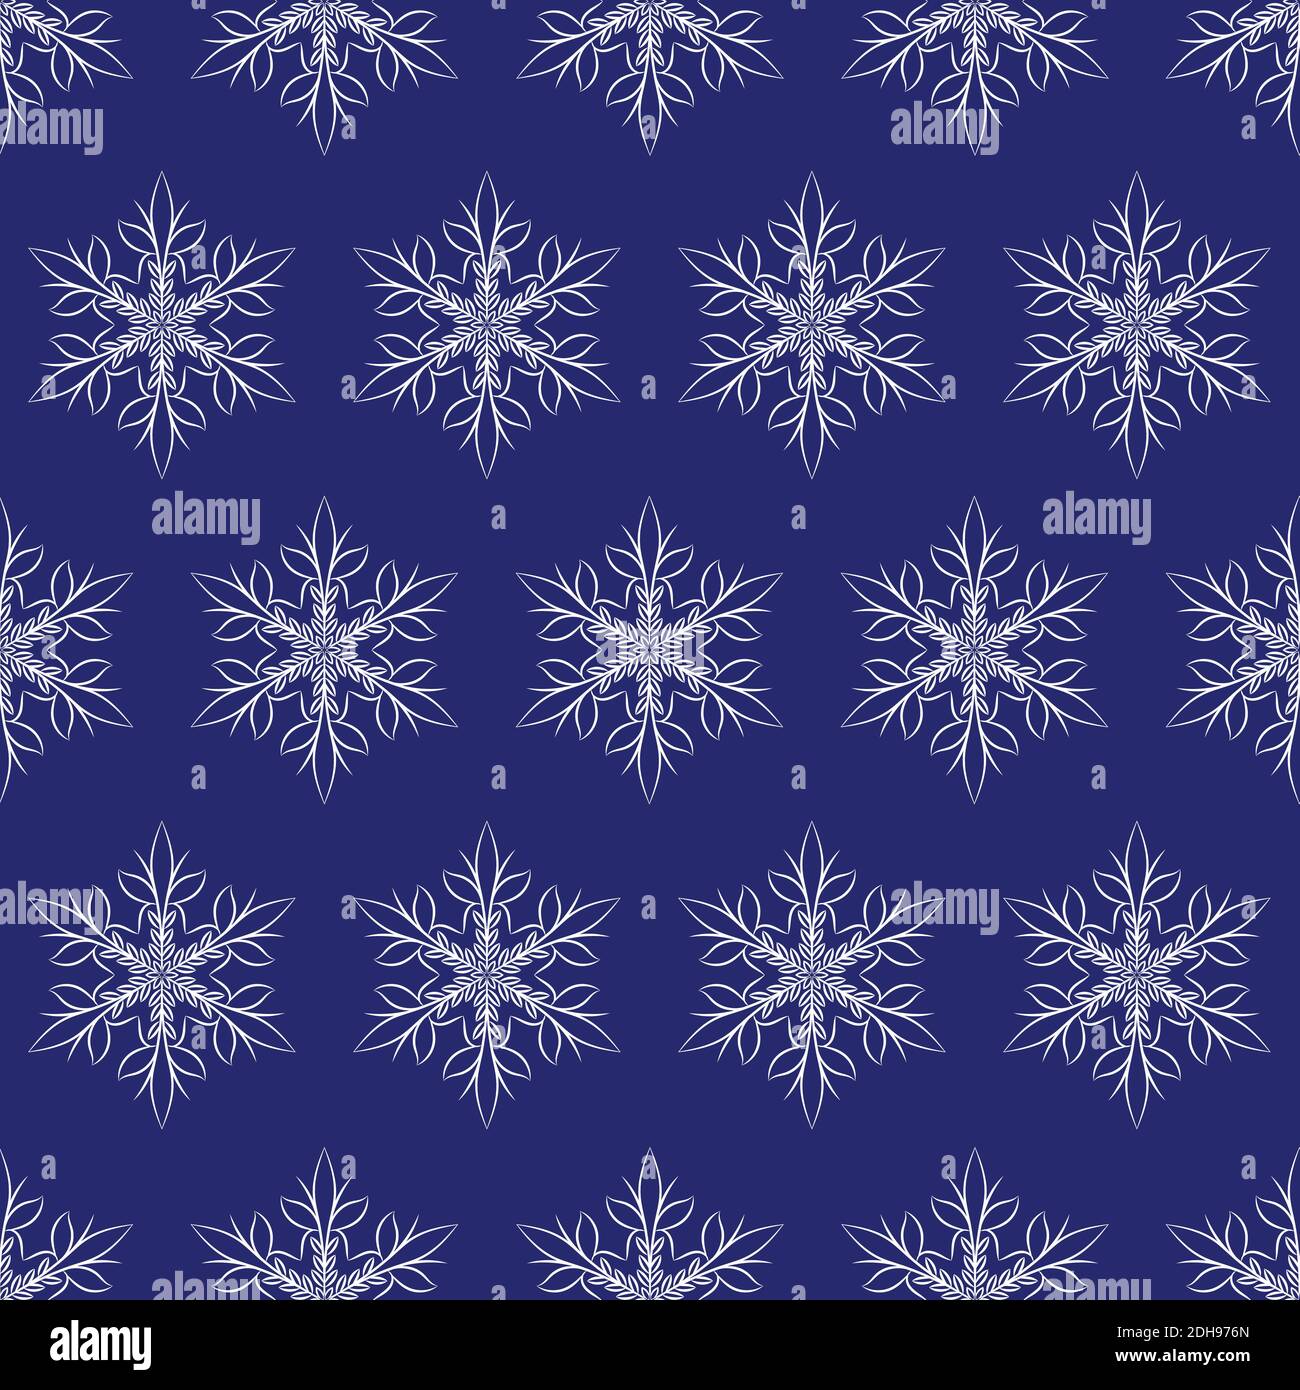 Winter sashiko seamless pattern with snowflakes. Stock Vector